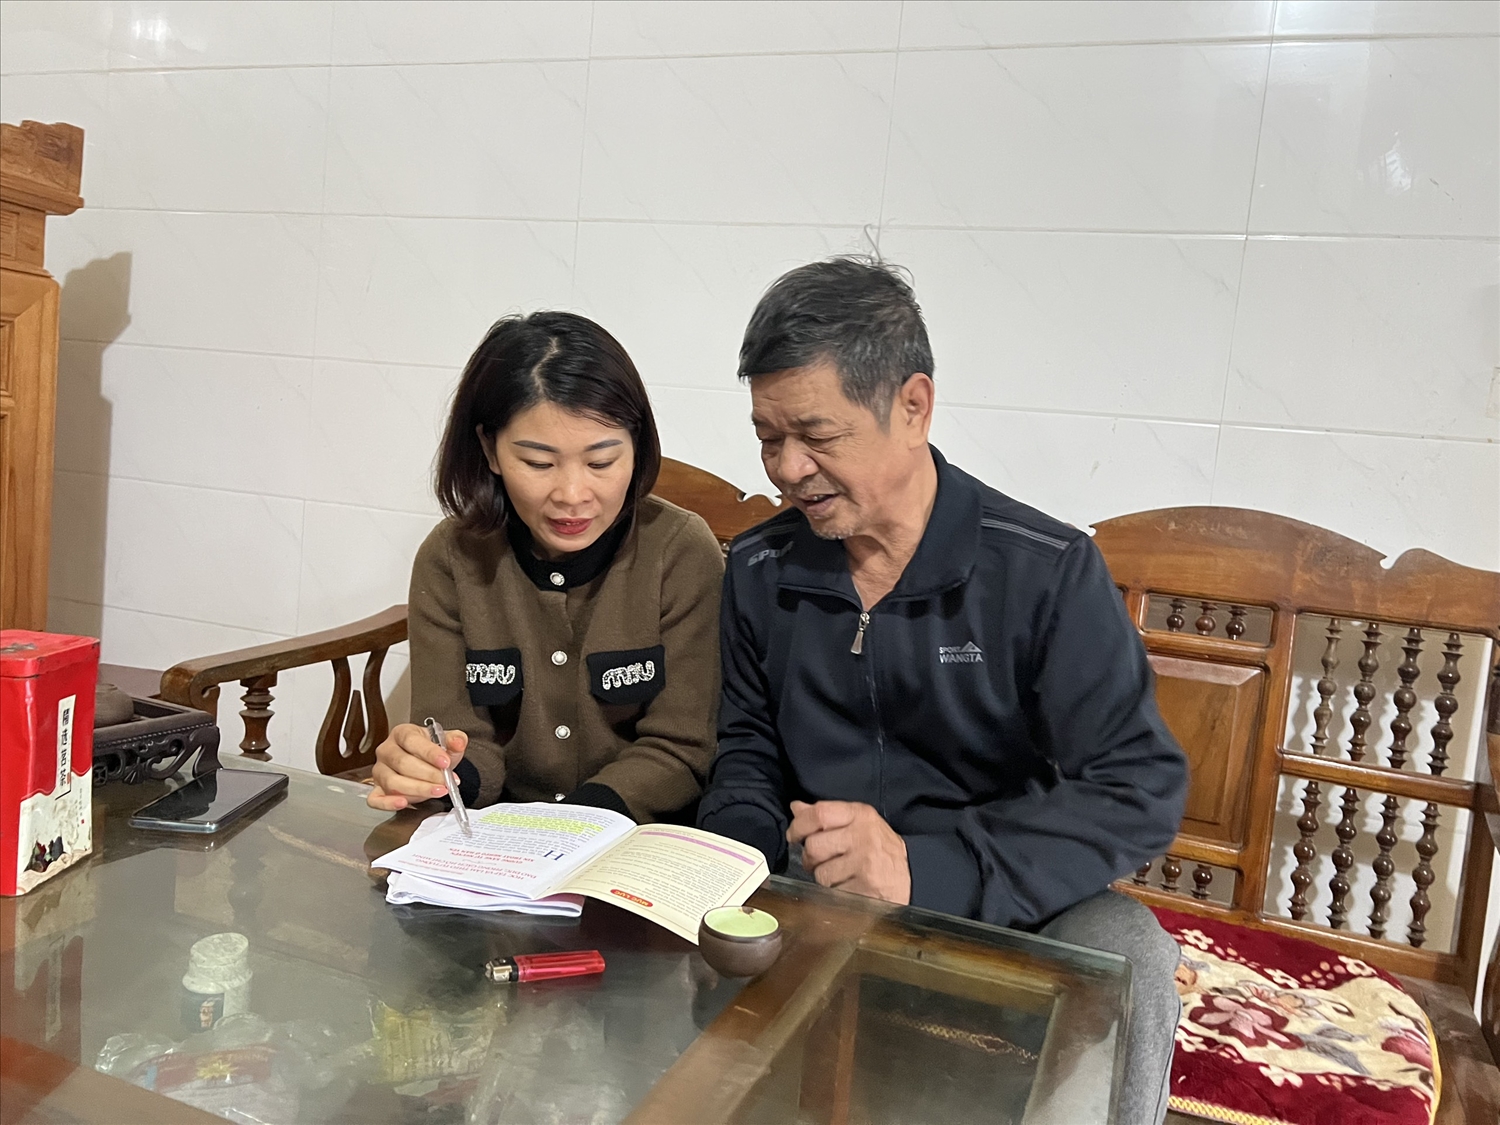 Ông Trần Văn Thiên, thôn Tân Hùng, xã Hùng Đức, huyện Hàm Yên được cán bộ xã hỗ trợ viết đơn xin thoát khỏi hộ nghèo.